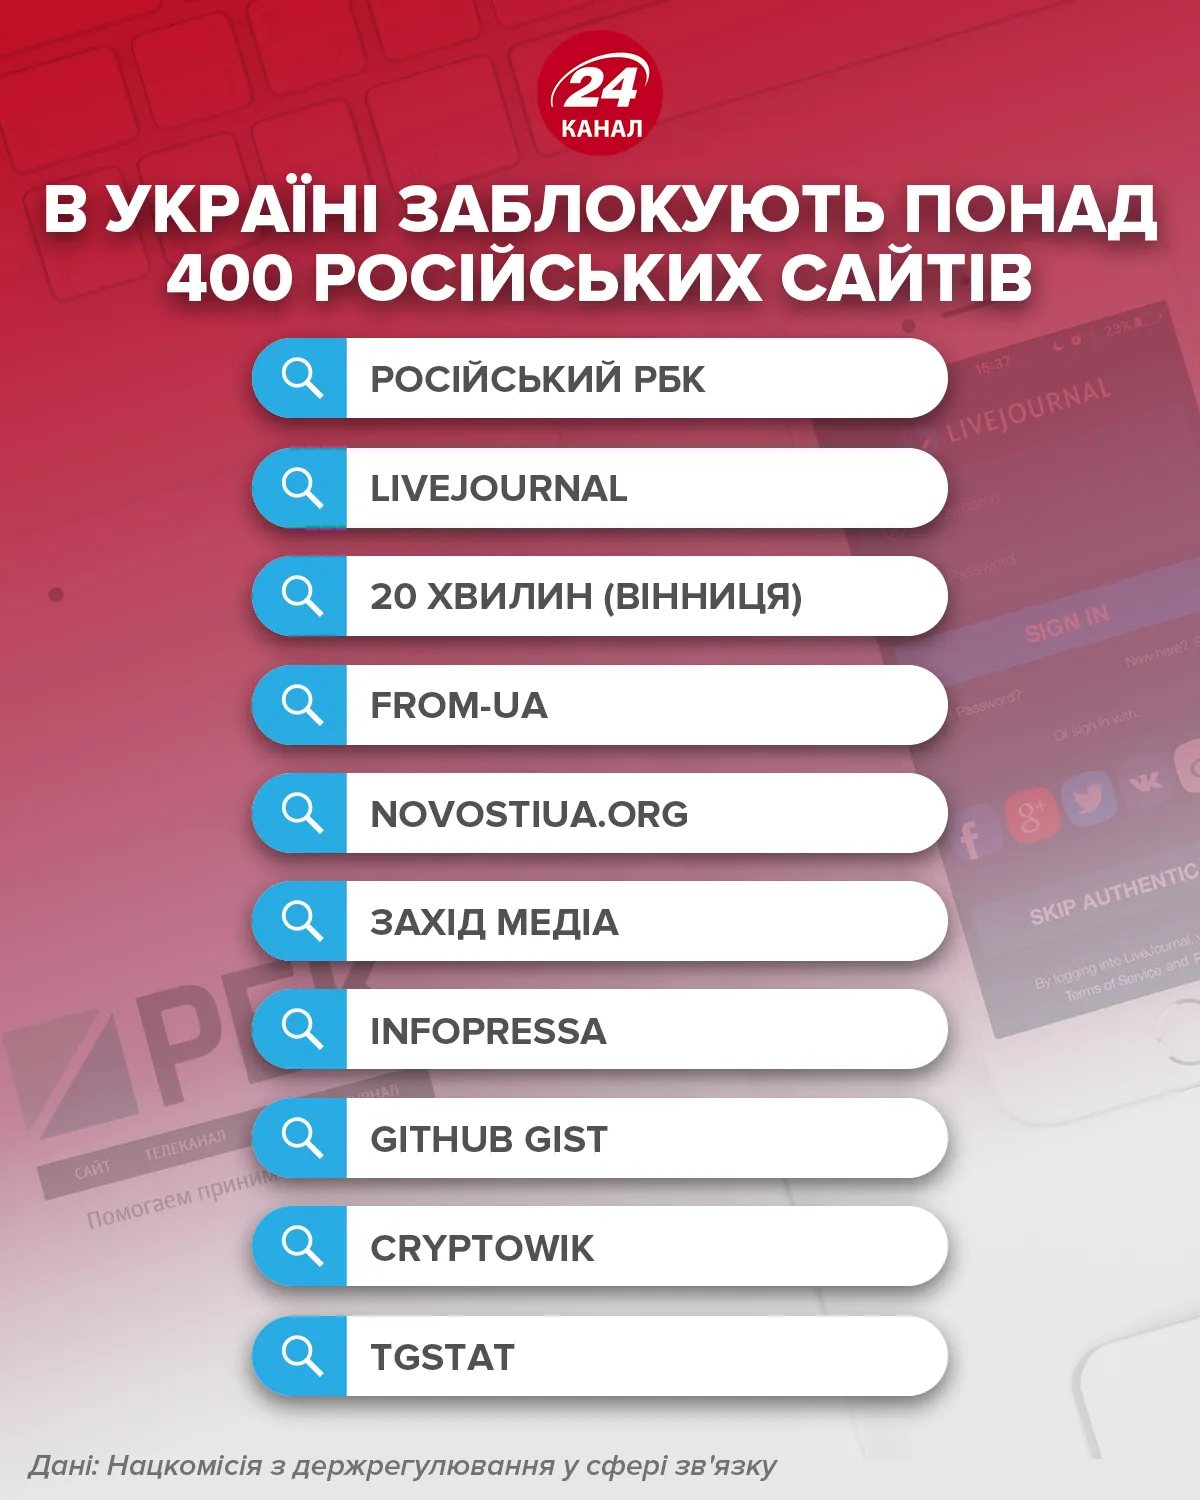 В Украине заблокируют более 400 российских сайтов / Инфографика 24 канала